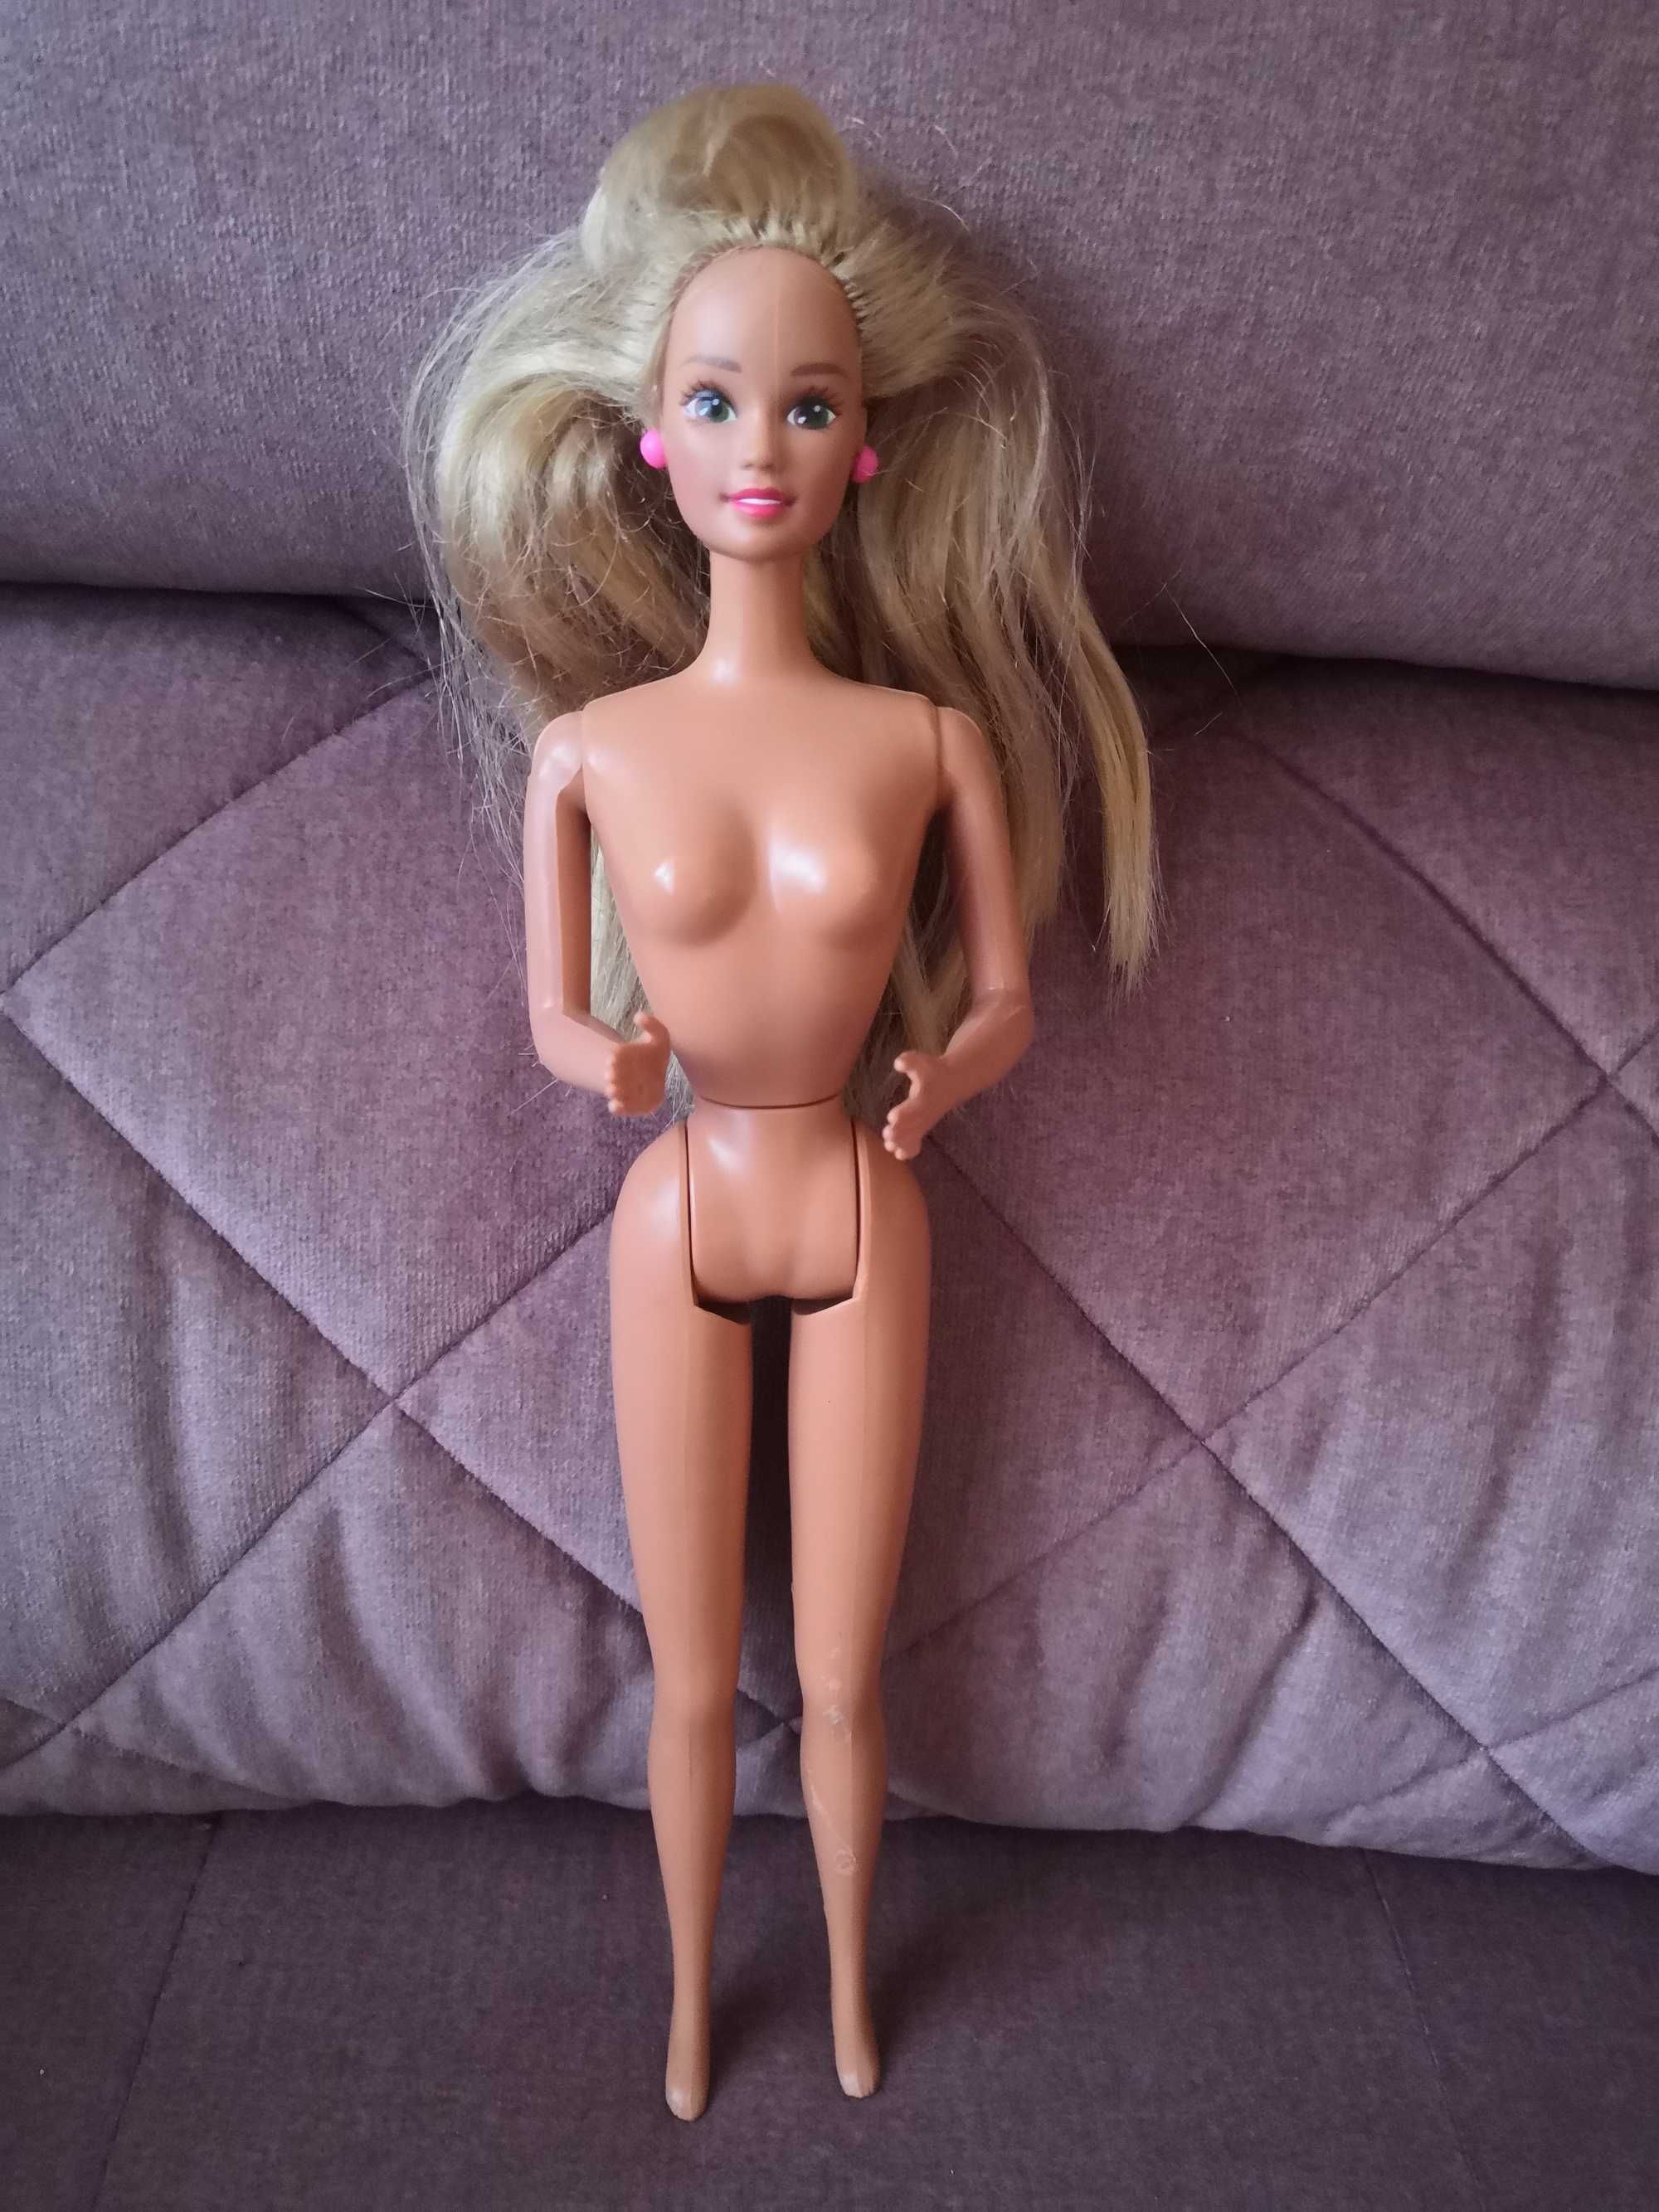 Lalka Barbie ciemnowłosa